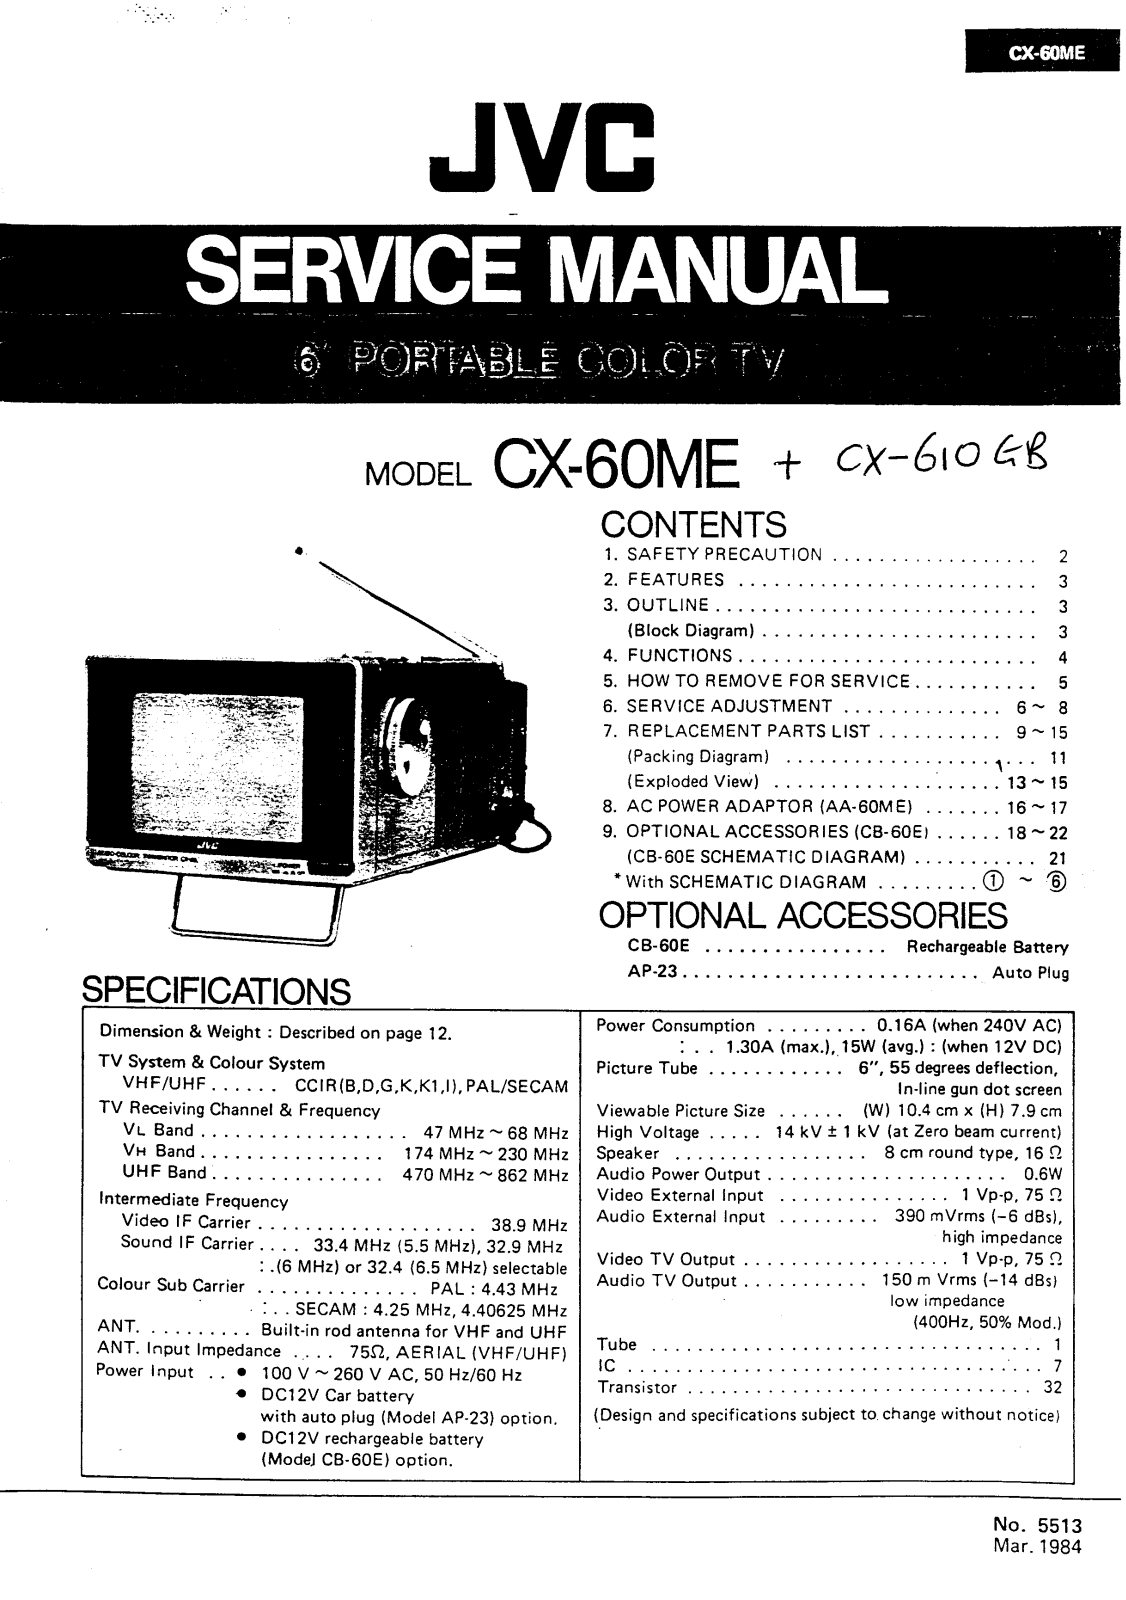 JVC CX-60ME Service Manual